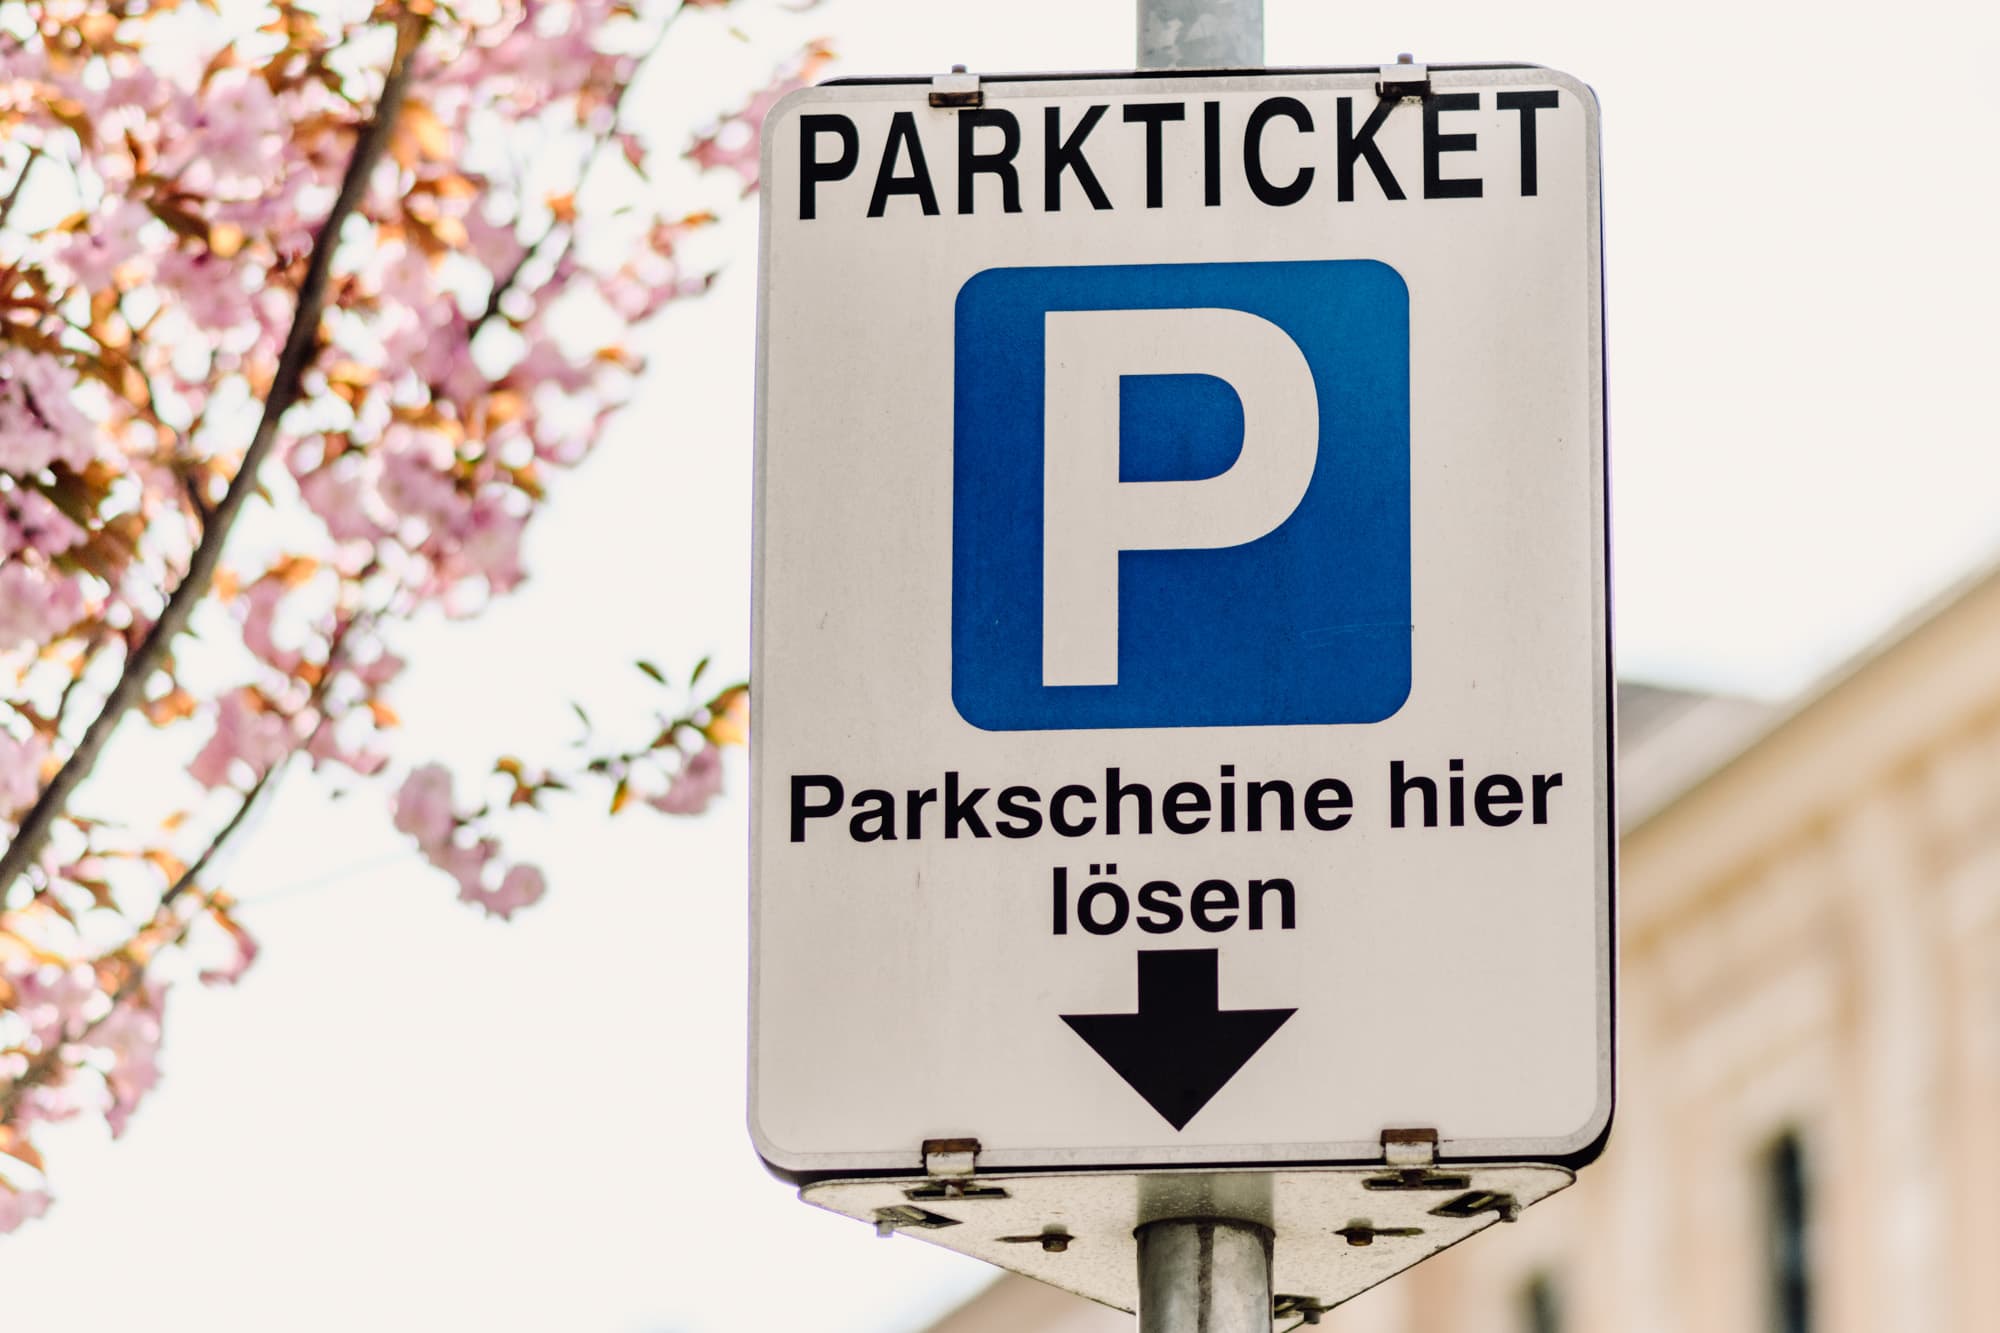 Parkticket, Parkschein, Hinweistafel, Parkscheine hier lösen, Parken in 9020 Klagenfurt am Wörthersee